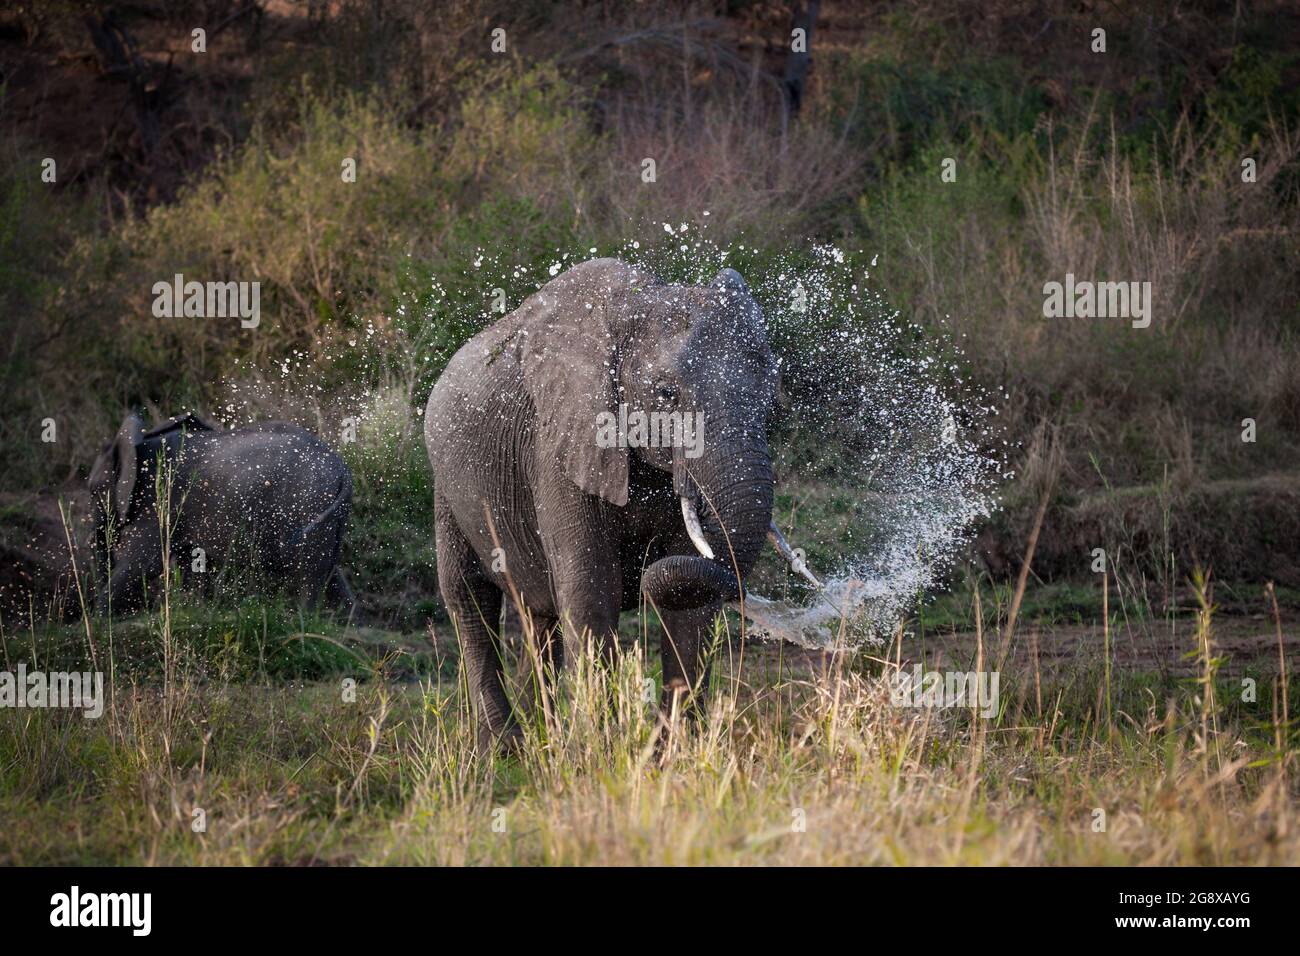 Un éléphant, Loxodonta africana, pulvérise de l'eau de son tronc dans un lit de rivière Banque D'Images